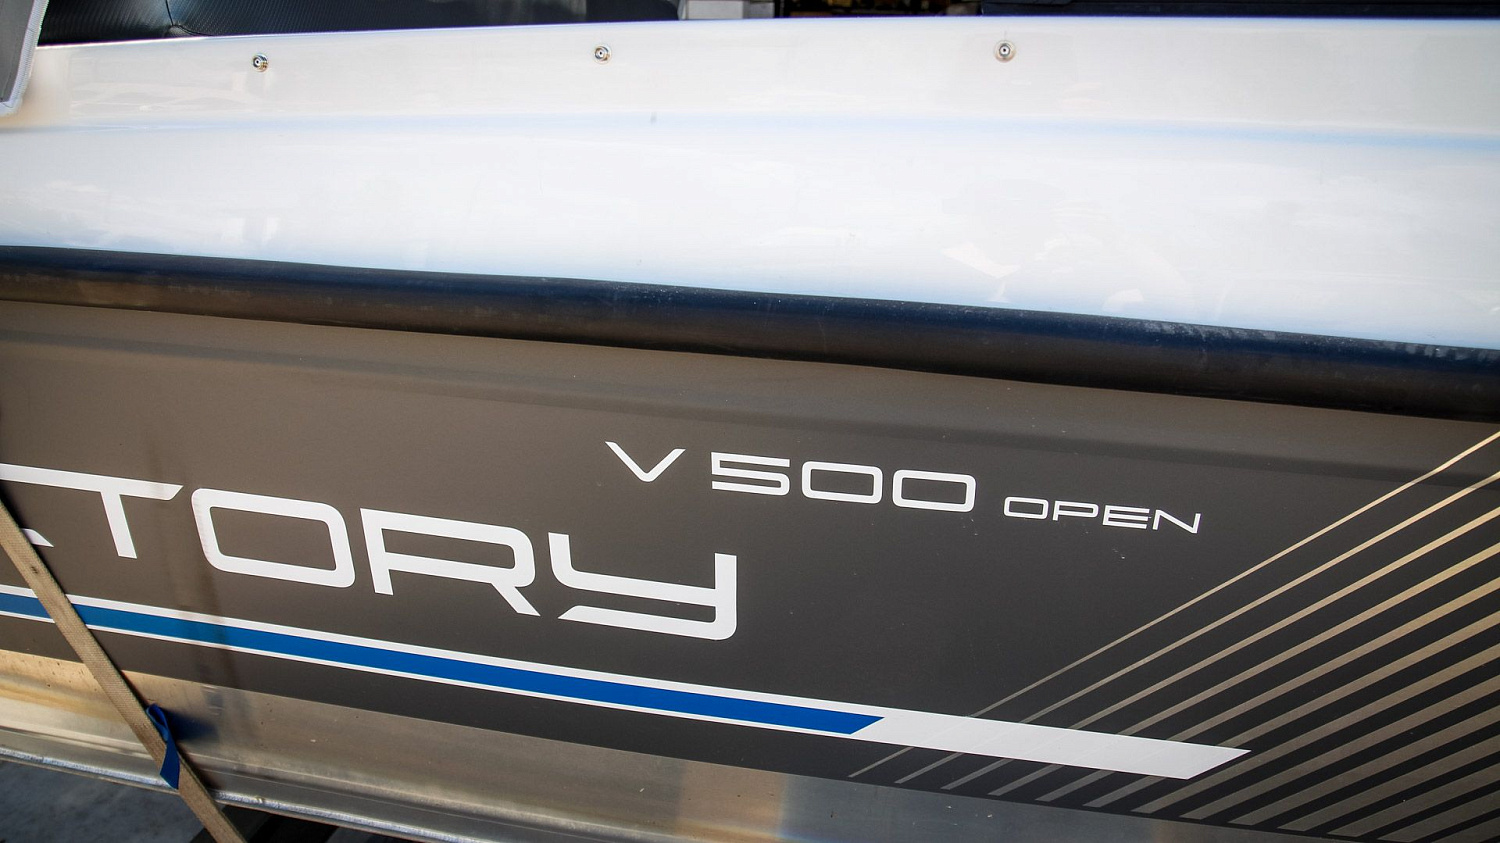 (2017) Victory V500 open Тент ходовой и транспортировочный